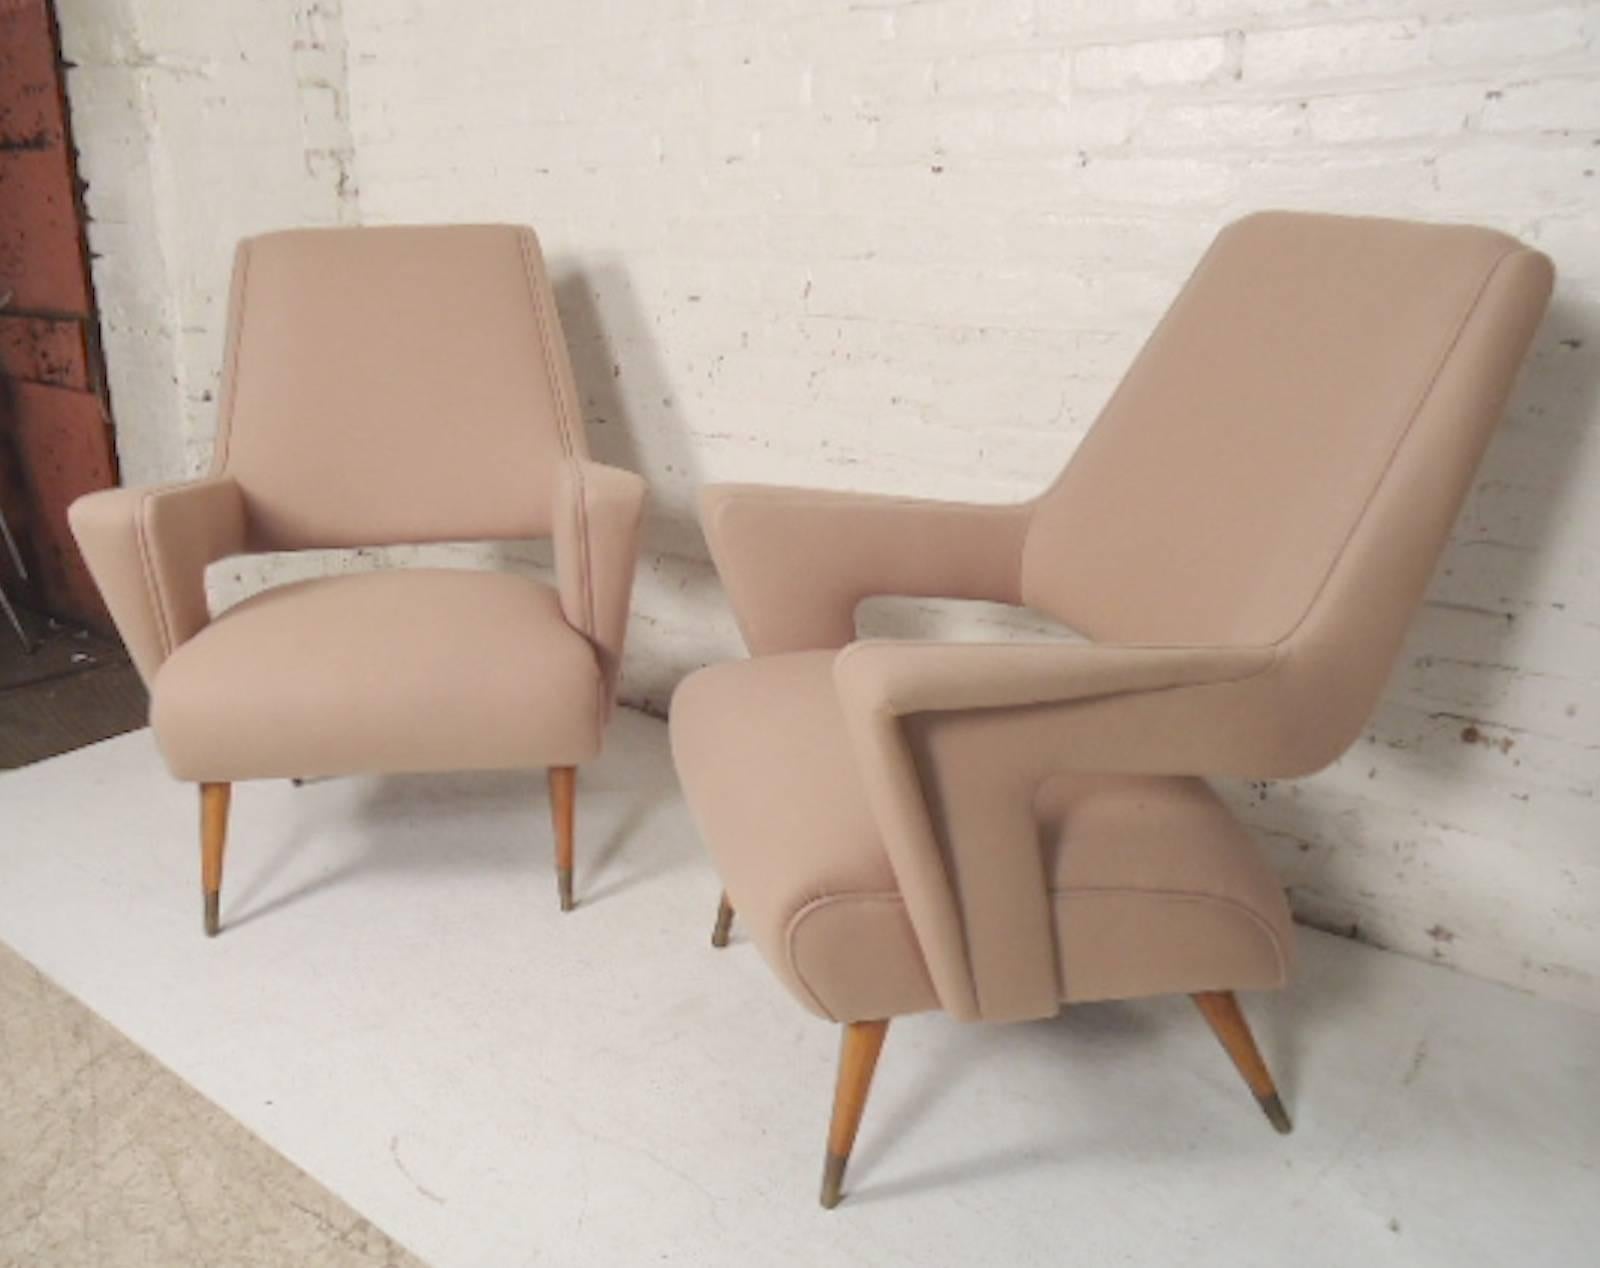 angular chairs